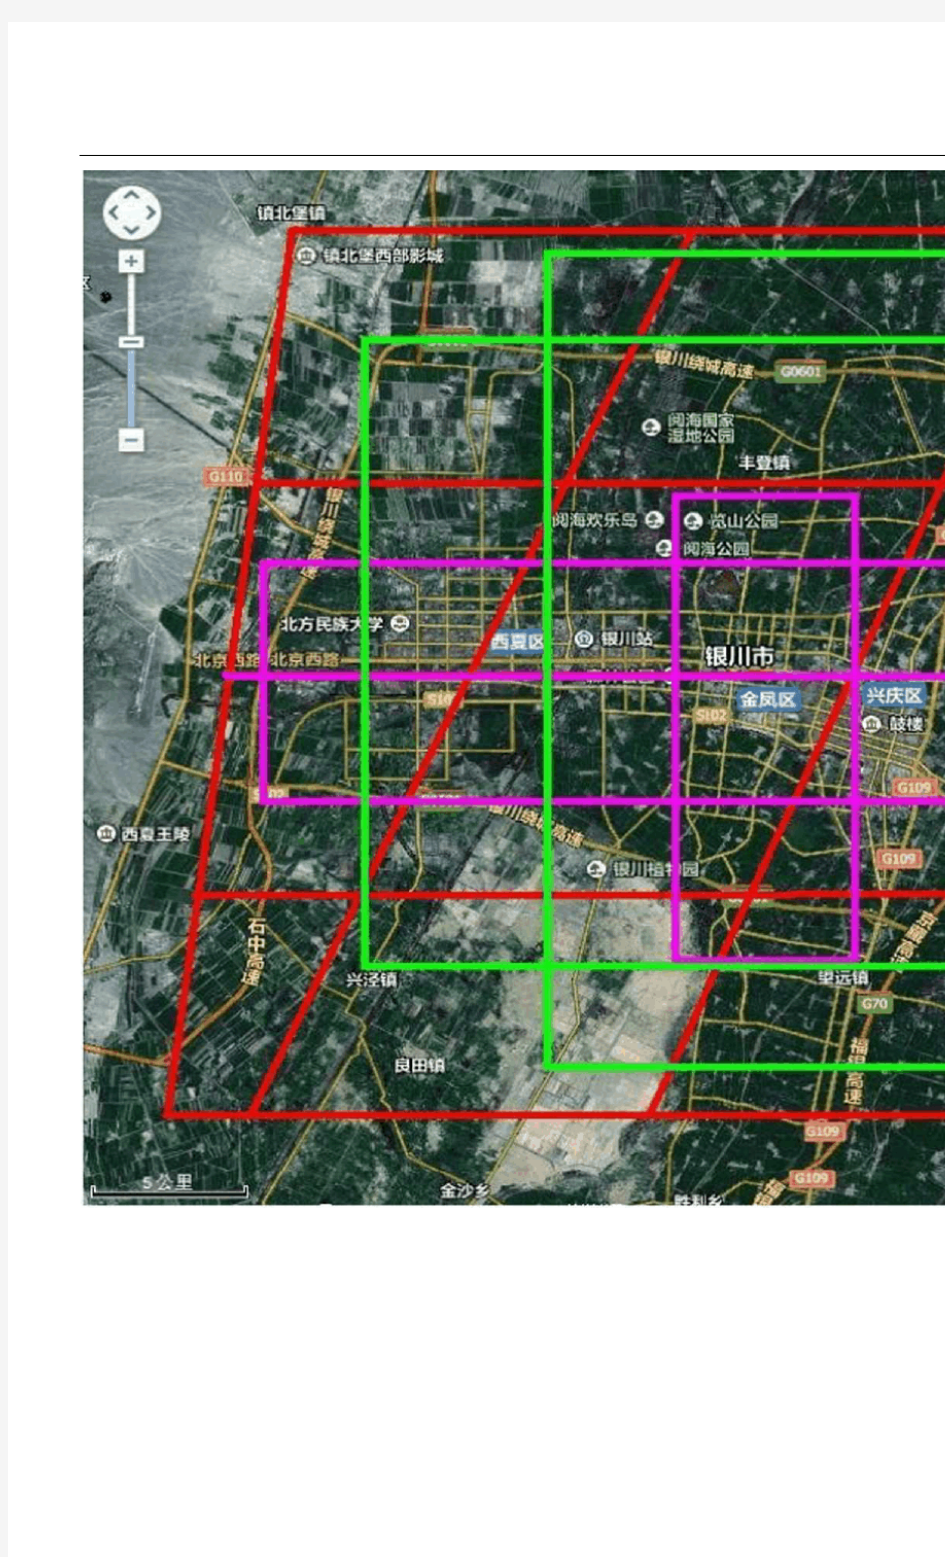 银川市未来城市轻轨、地铁、及城市扩建规划方案设想图